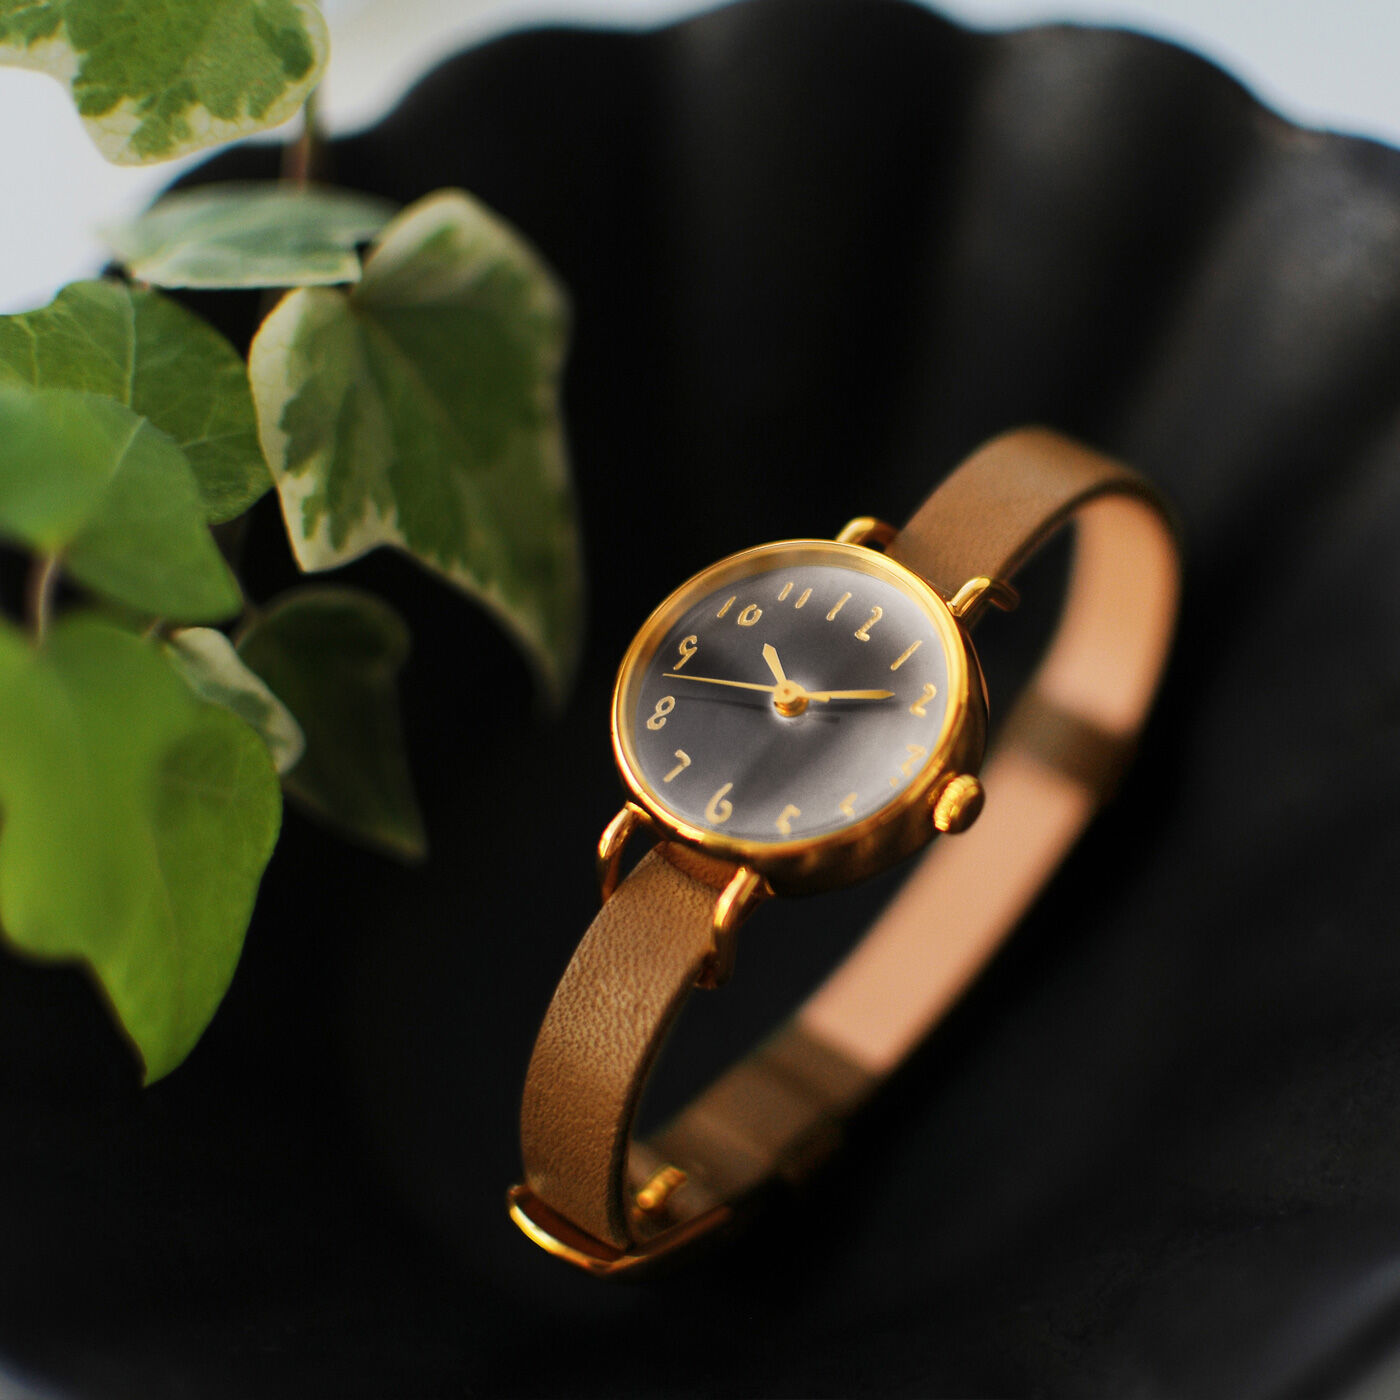 ＆Stories|金沢の時計職人が手掛けた　想い出の珈琲に見惚れる腕時計（モカ色）|珈琲時間をふと思い出すことができる時計を、金沢にある時計工房と一緒に作りました。